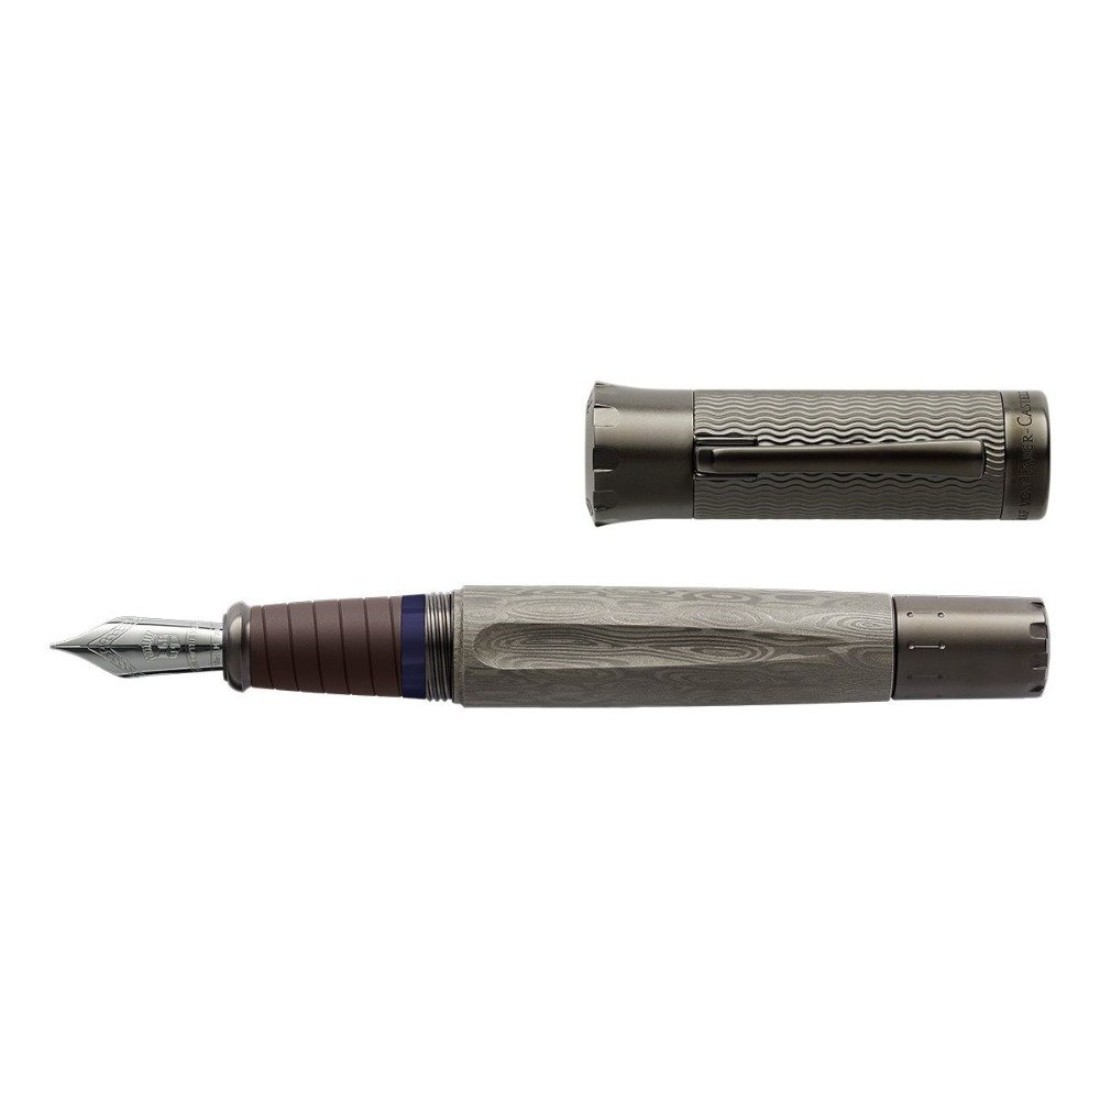 Graf von Faber-Castell Pen of The Year 2021 pen - Vulpen / Fountain pen Appelboom.com